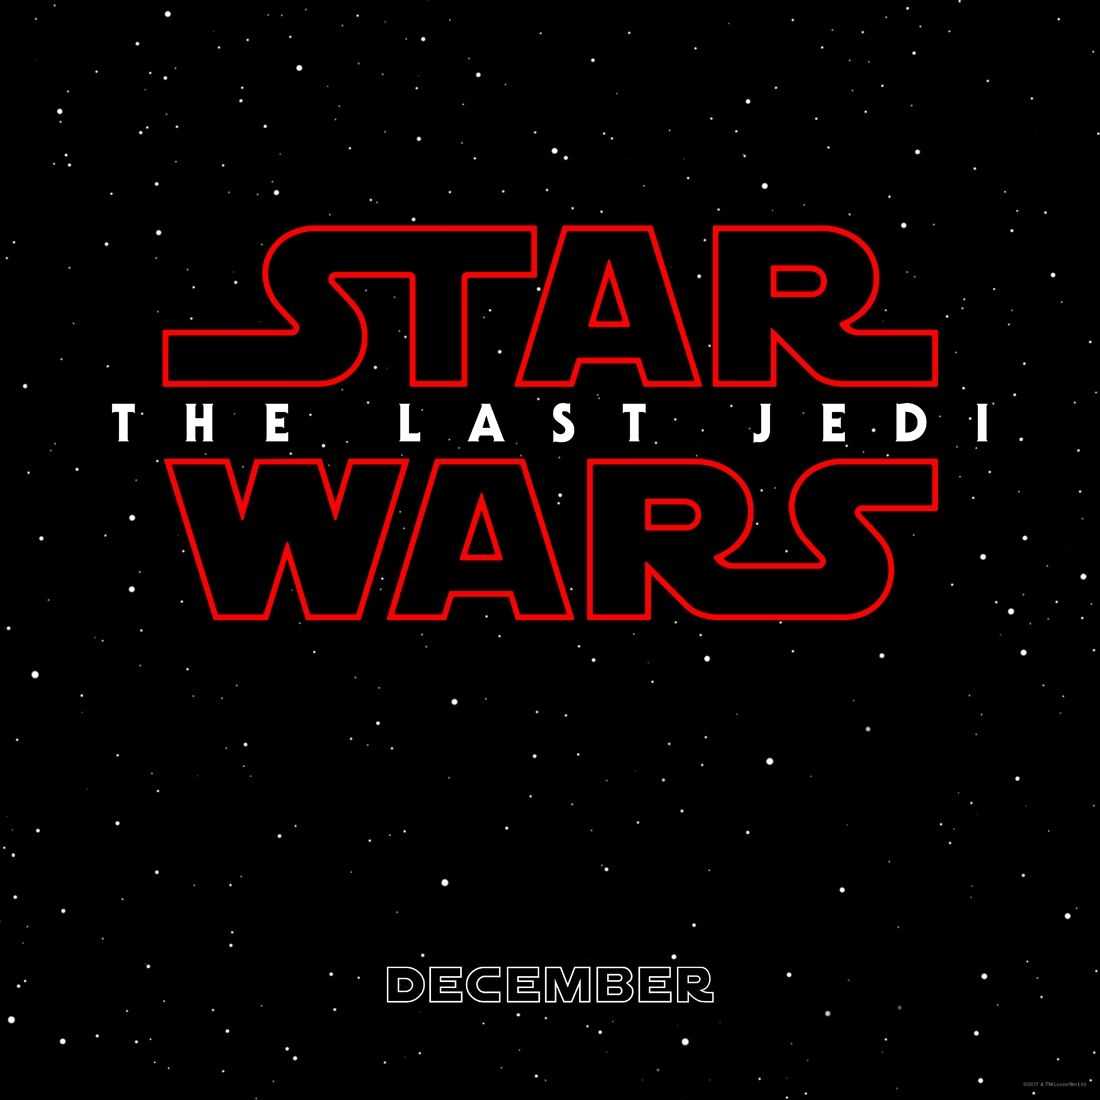 L’episodi VIII d'’Star Wars' ja té títol